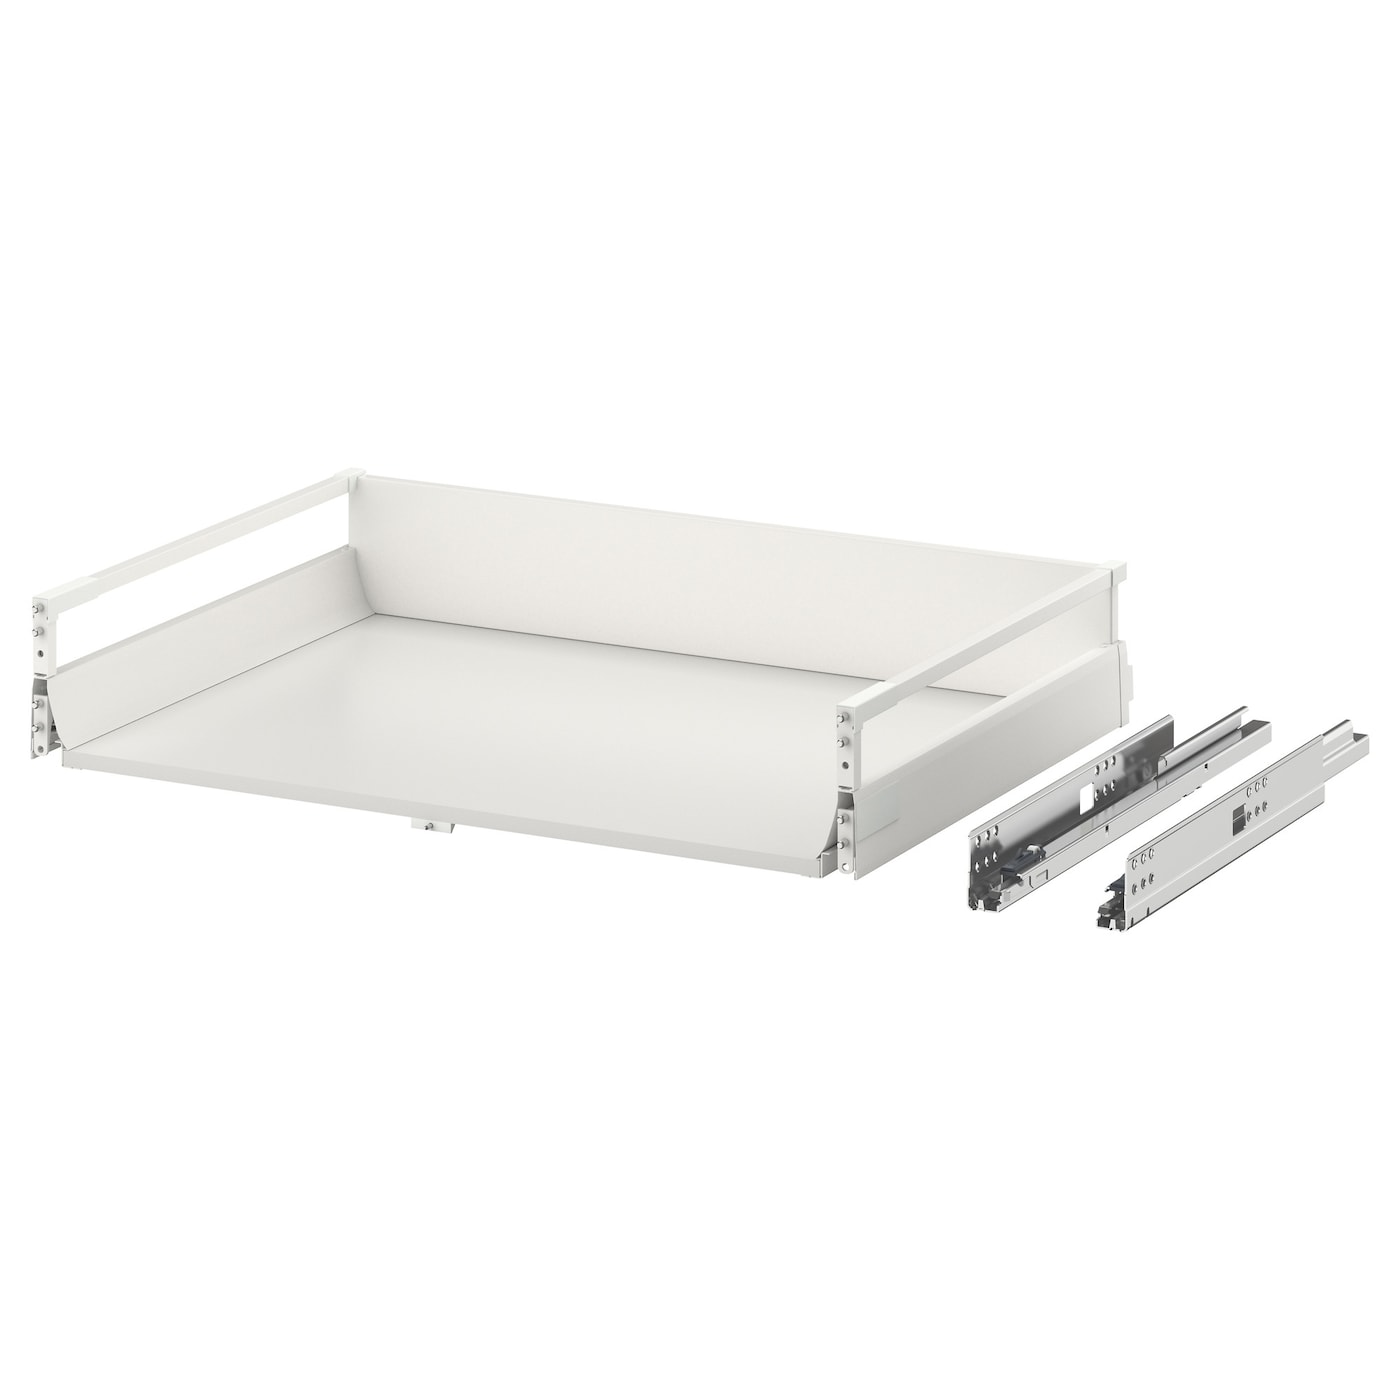 Ящик средний с точечным открыванием -  EXCEPTIONELL IKEA/ ЭКСЕПТИОНЕЛЛЬ  ИКЕА, 76,4х14,4 см, белый